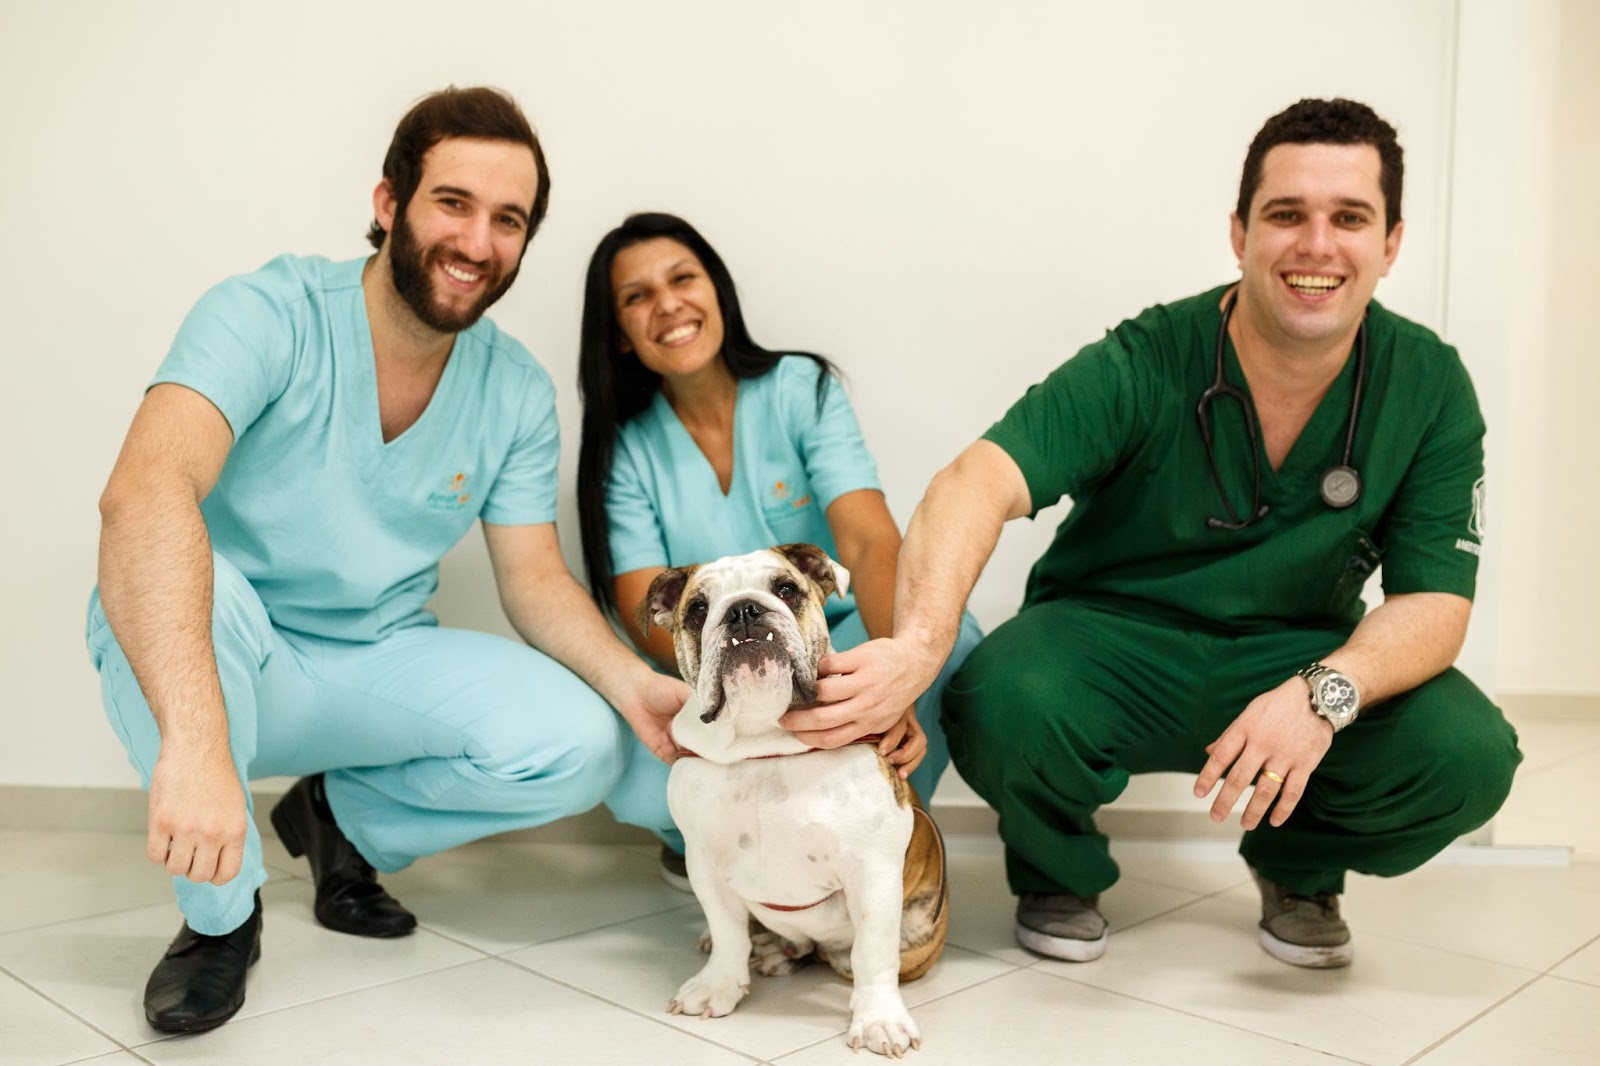 Equipe de clínica veterinária sorri após automatizar envio de mensagem automática no whatsapp 